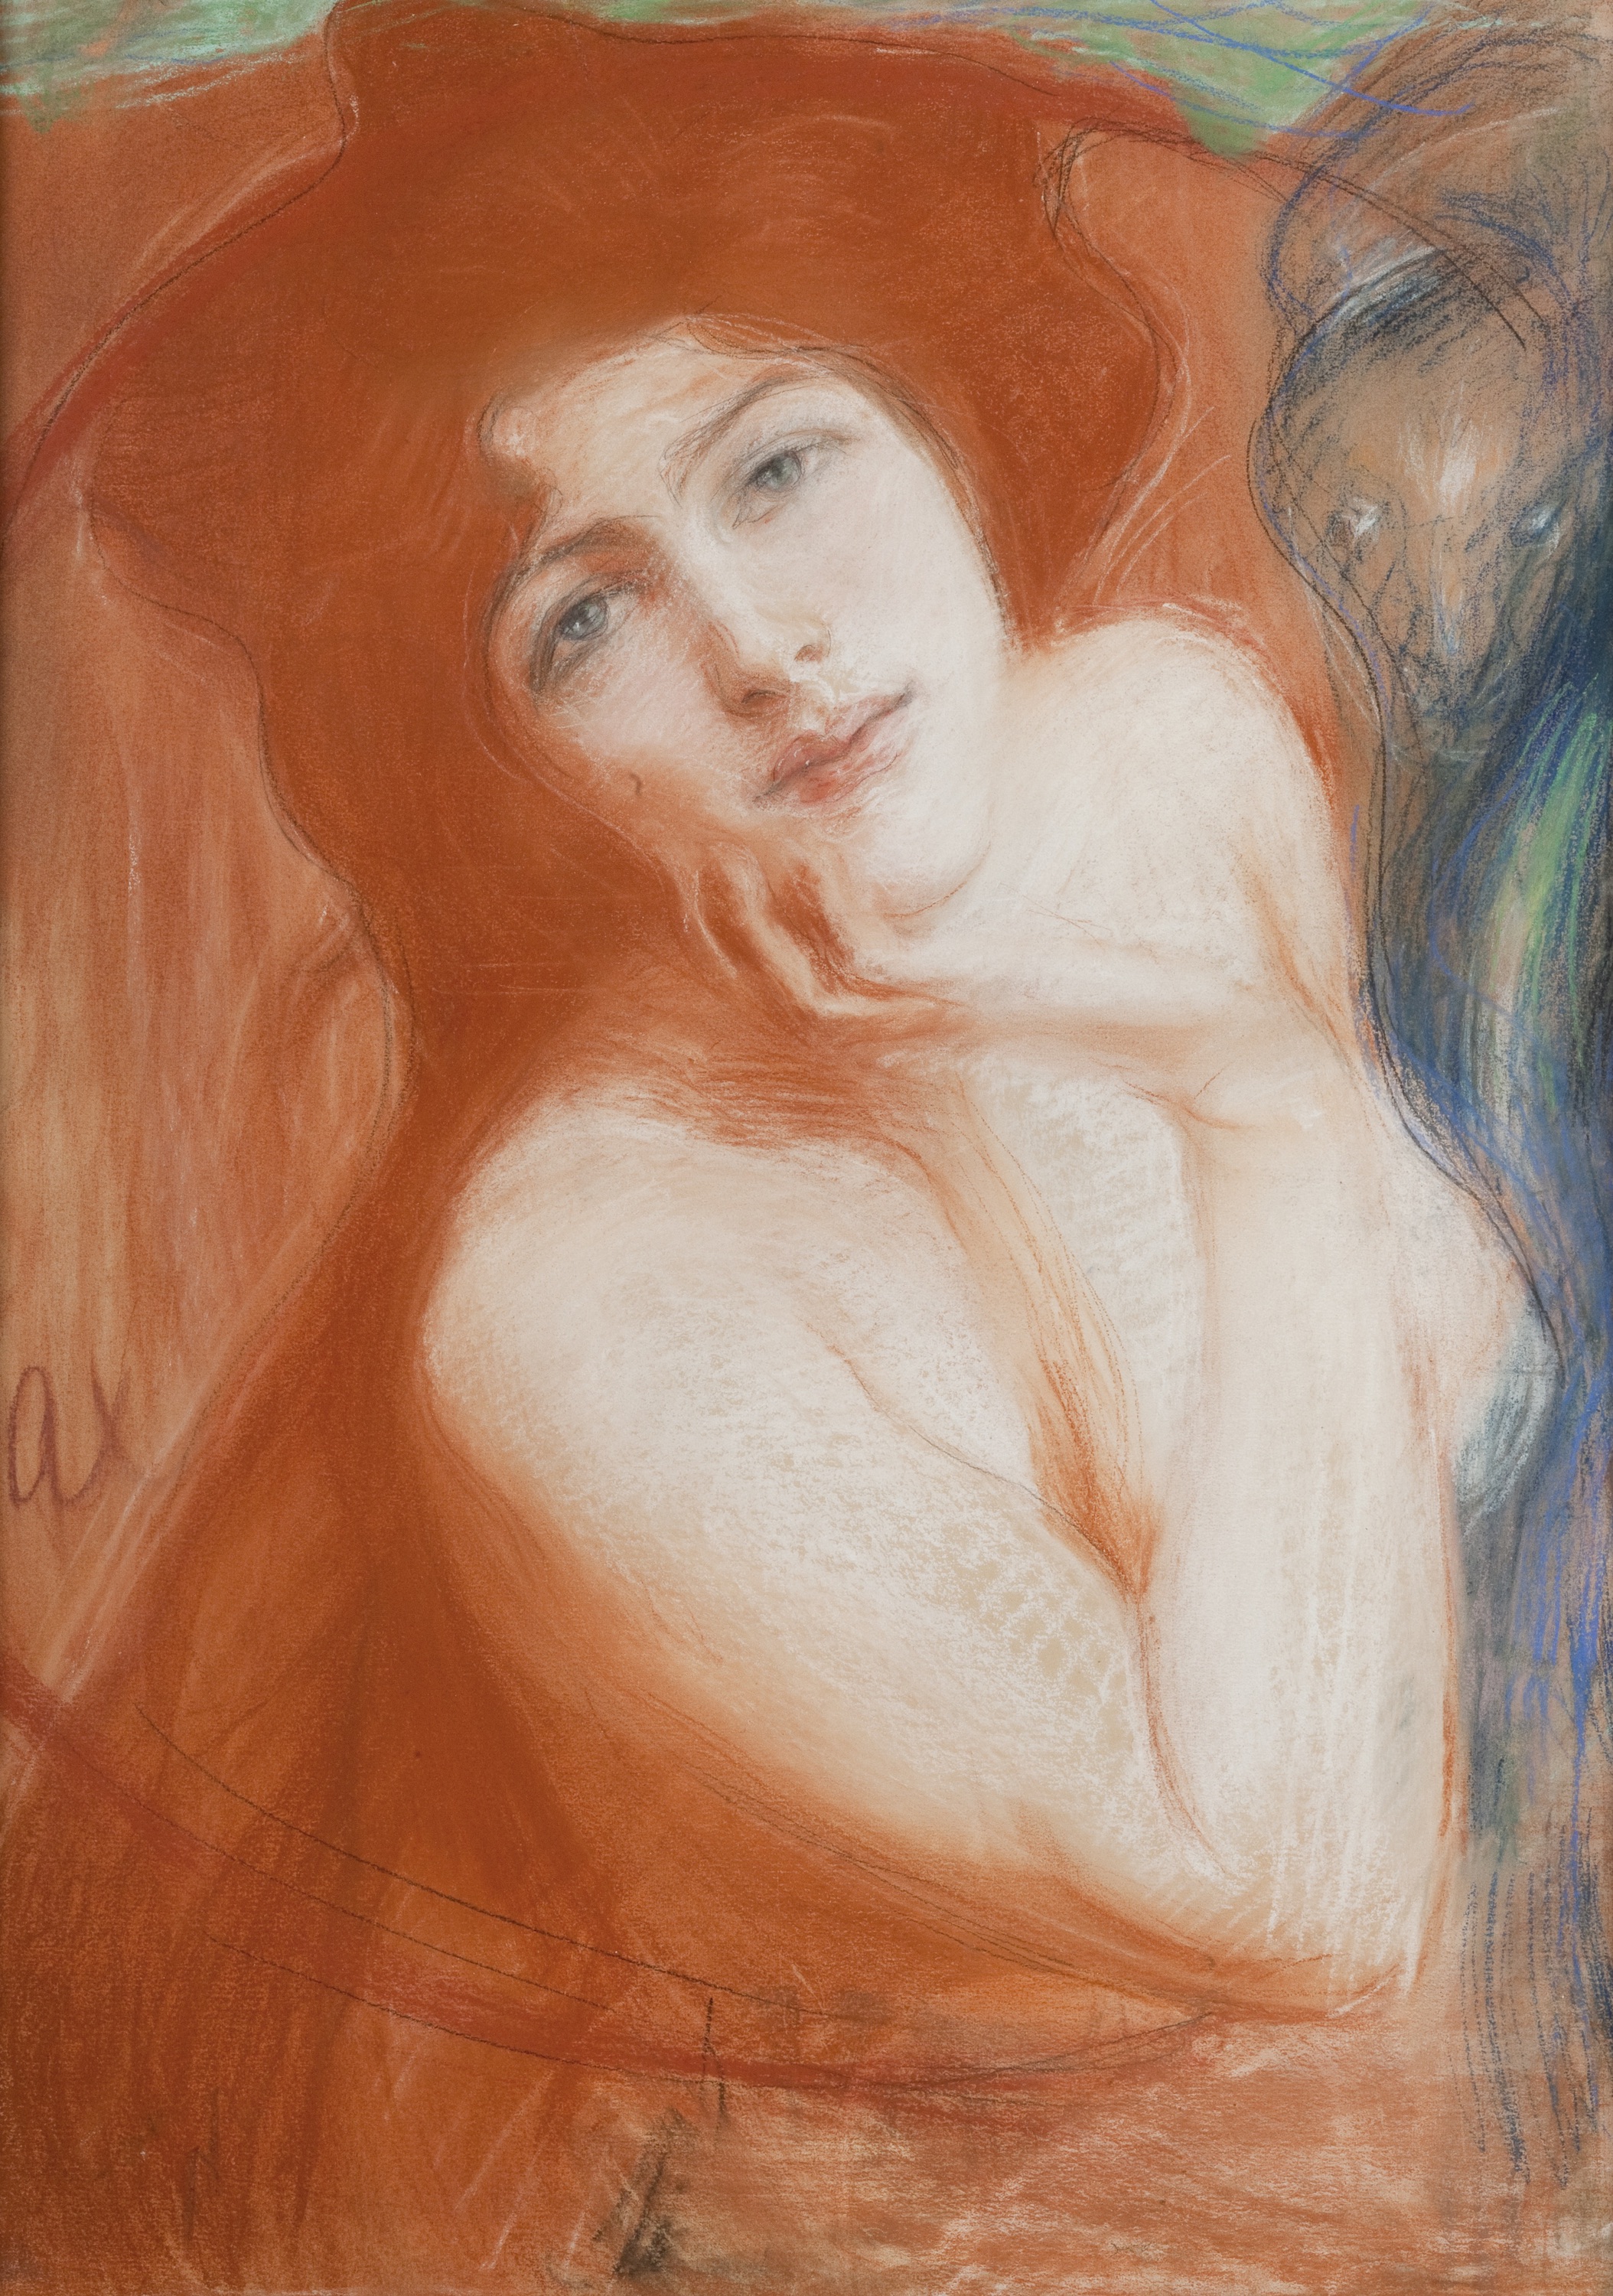 Vöröshajú nő by Teodor Axentowicz - 1899 